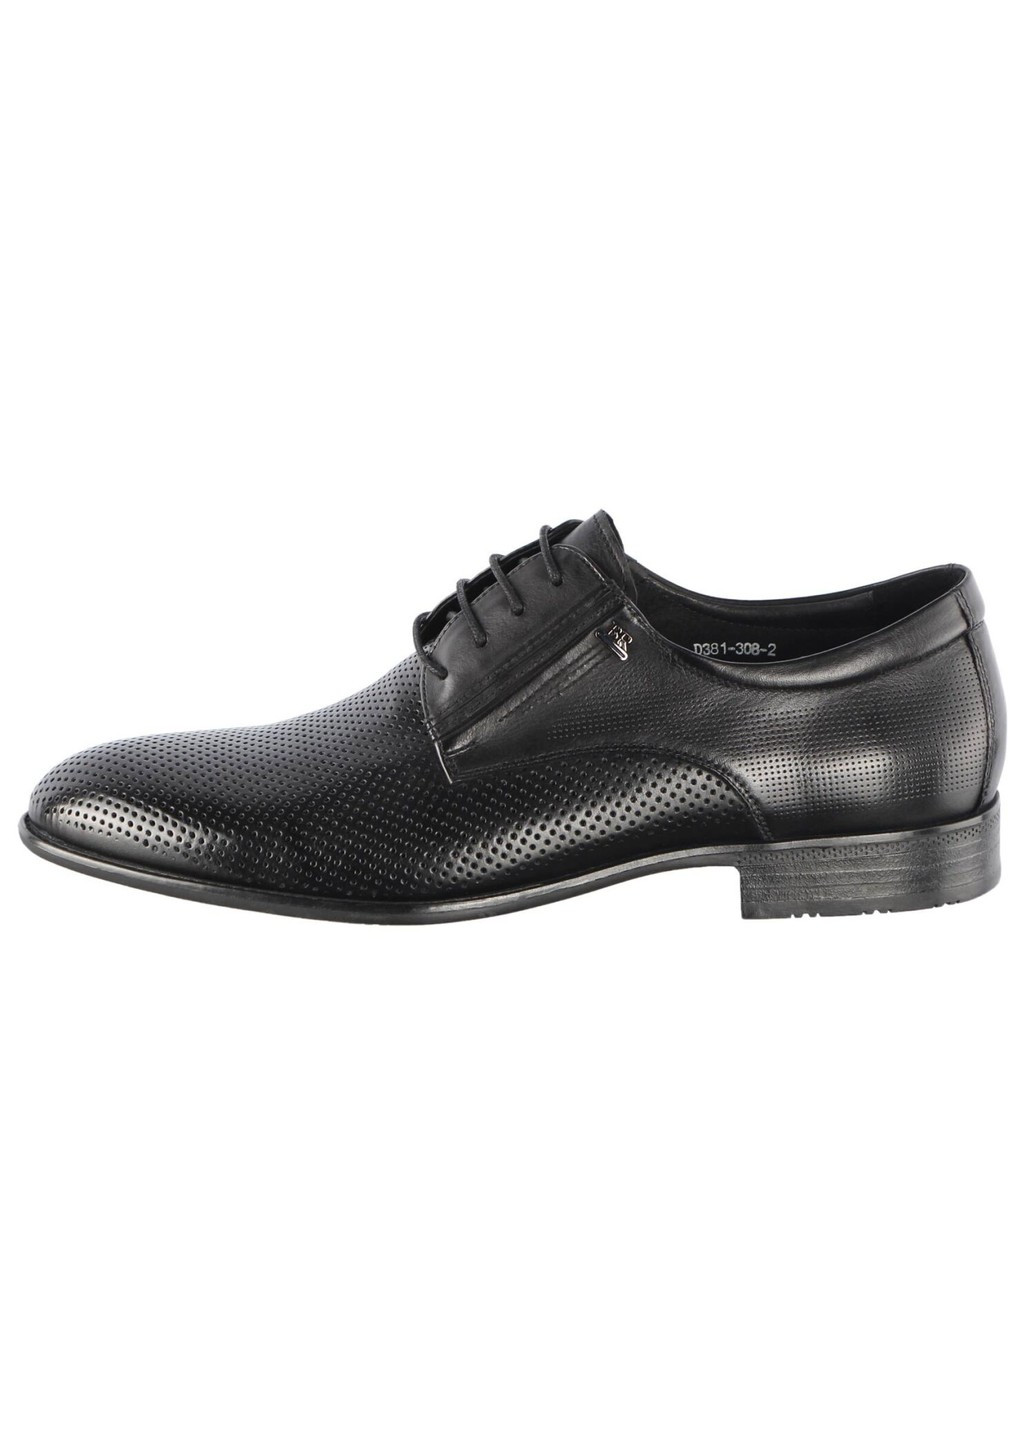 Черные мужские туфли с перфорацией 195845 Buts на шнурках